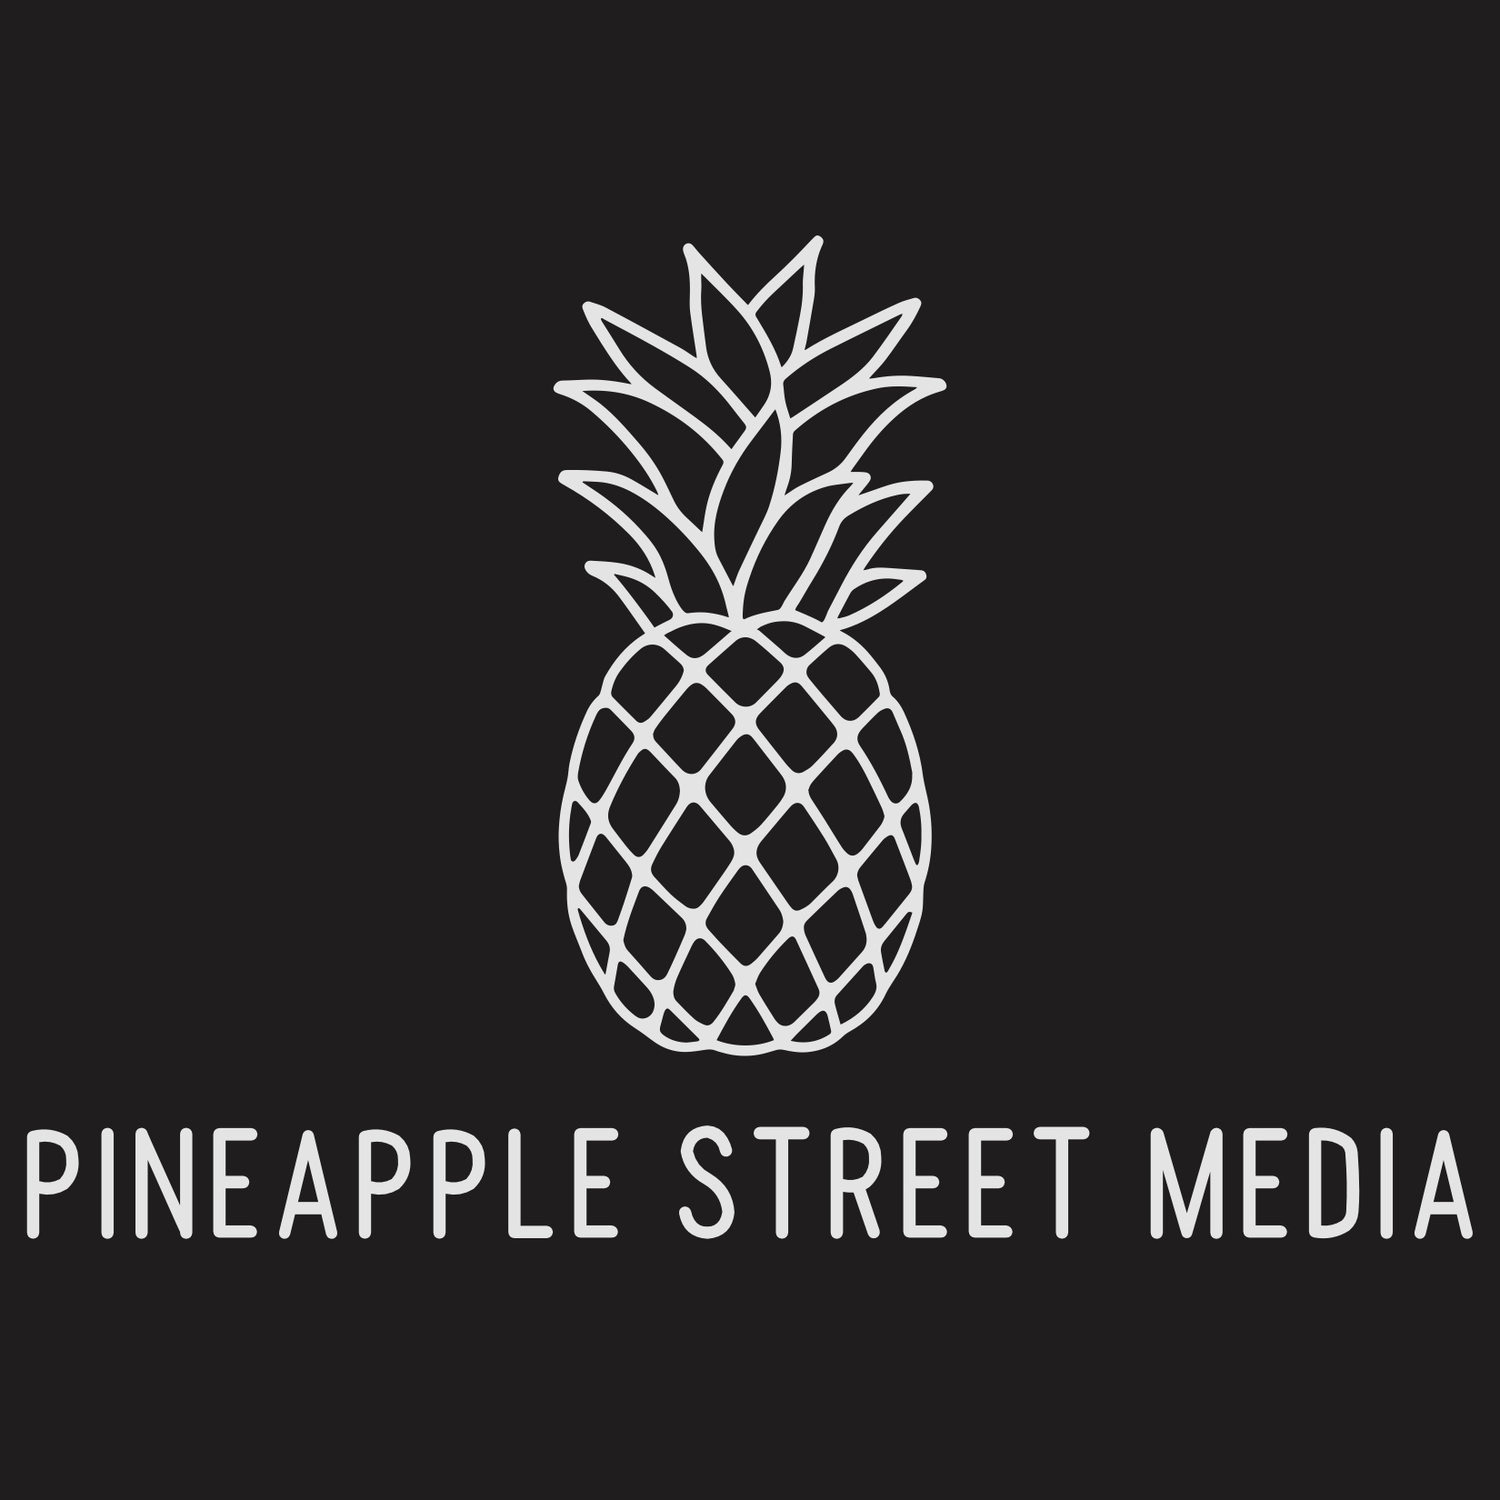 Pineapple Street Media